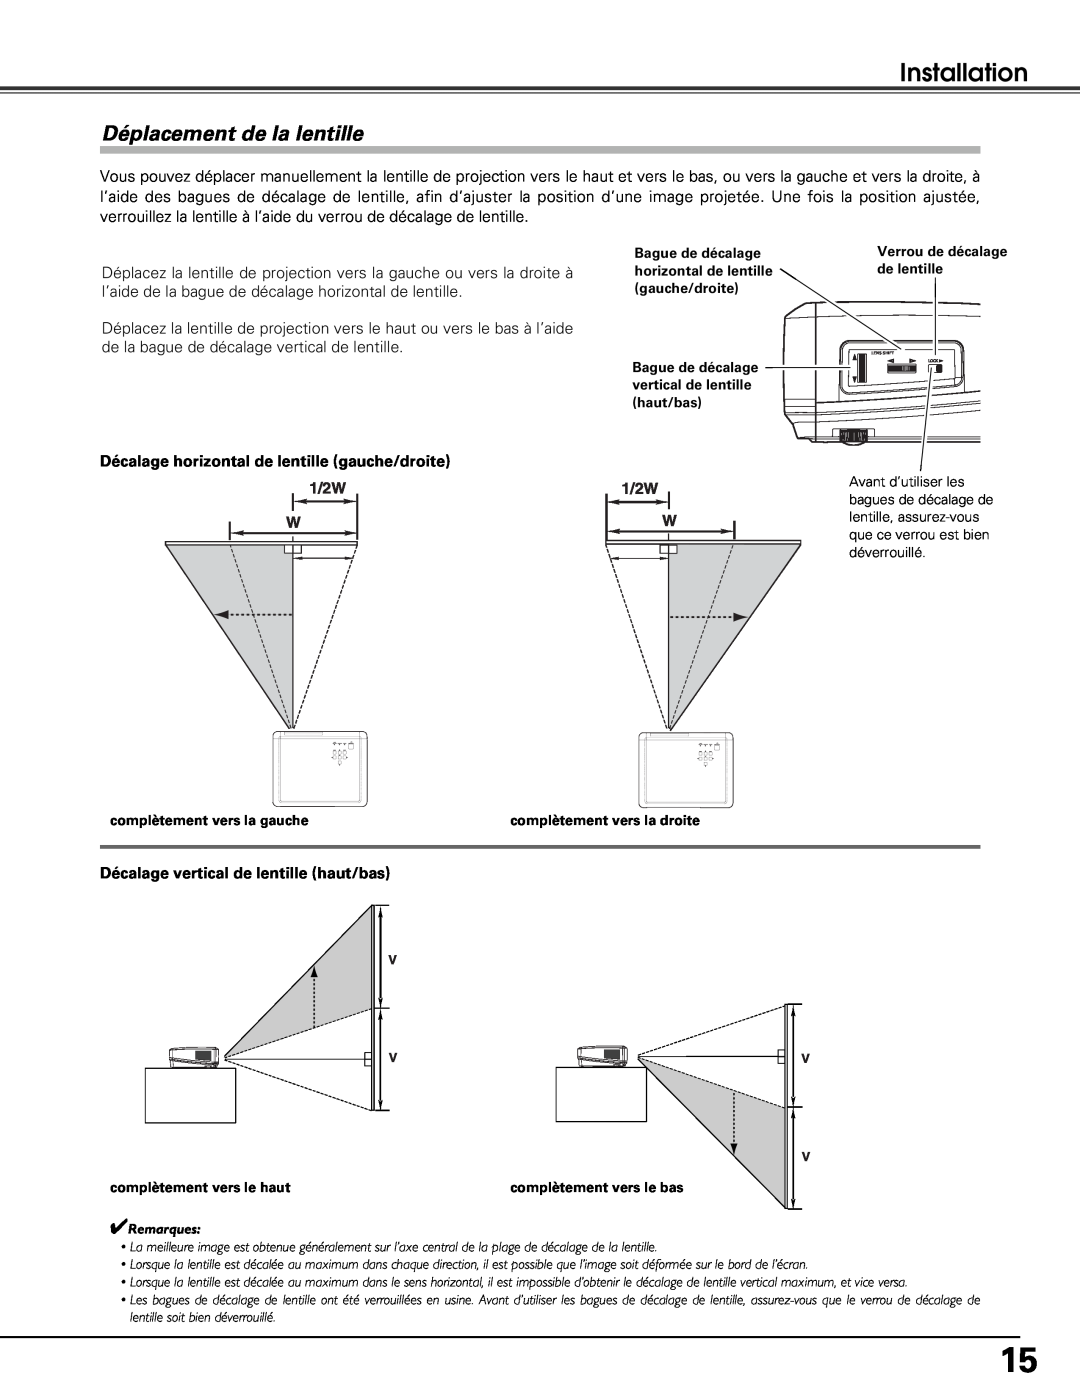 Sanyo PLV-Z5BK manual Déplacement de la lentille, Installation, Décalage horizontal de lentille gauche/droite, 1/2W 